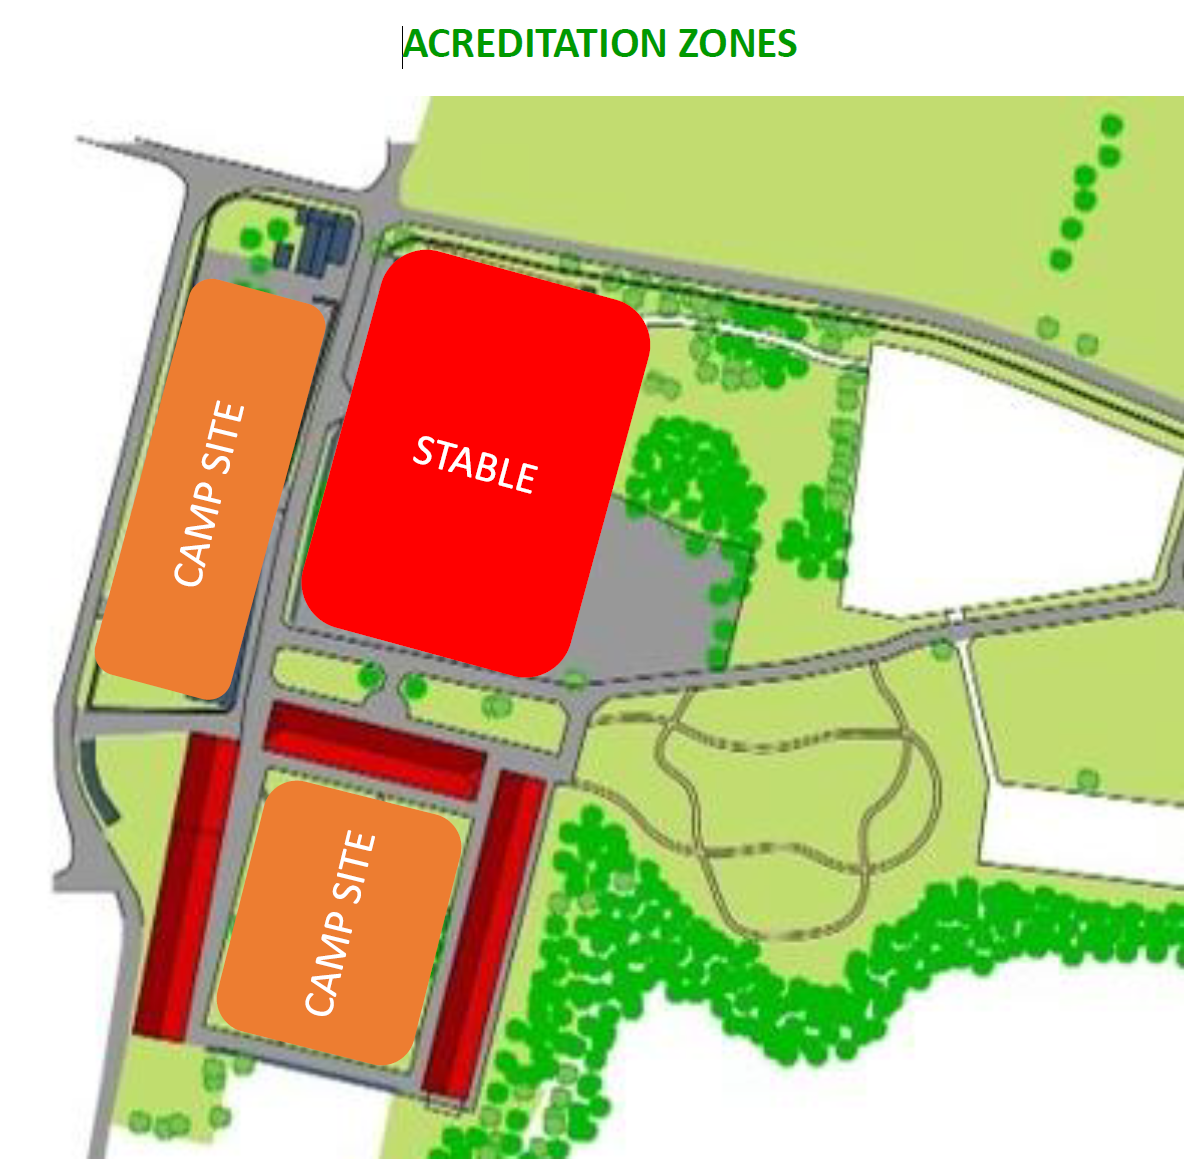 acreditation zones map